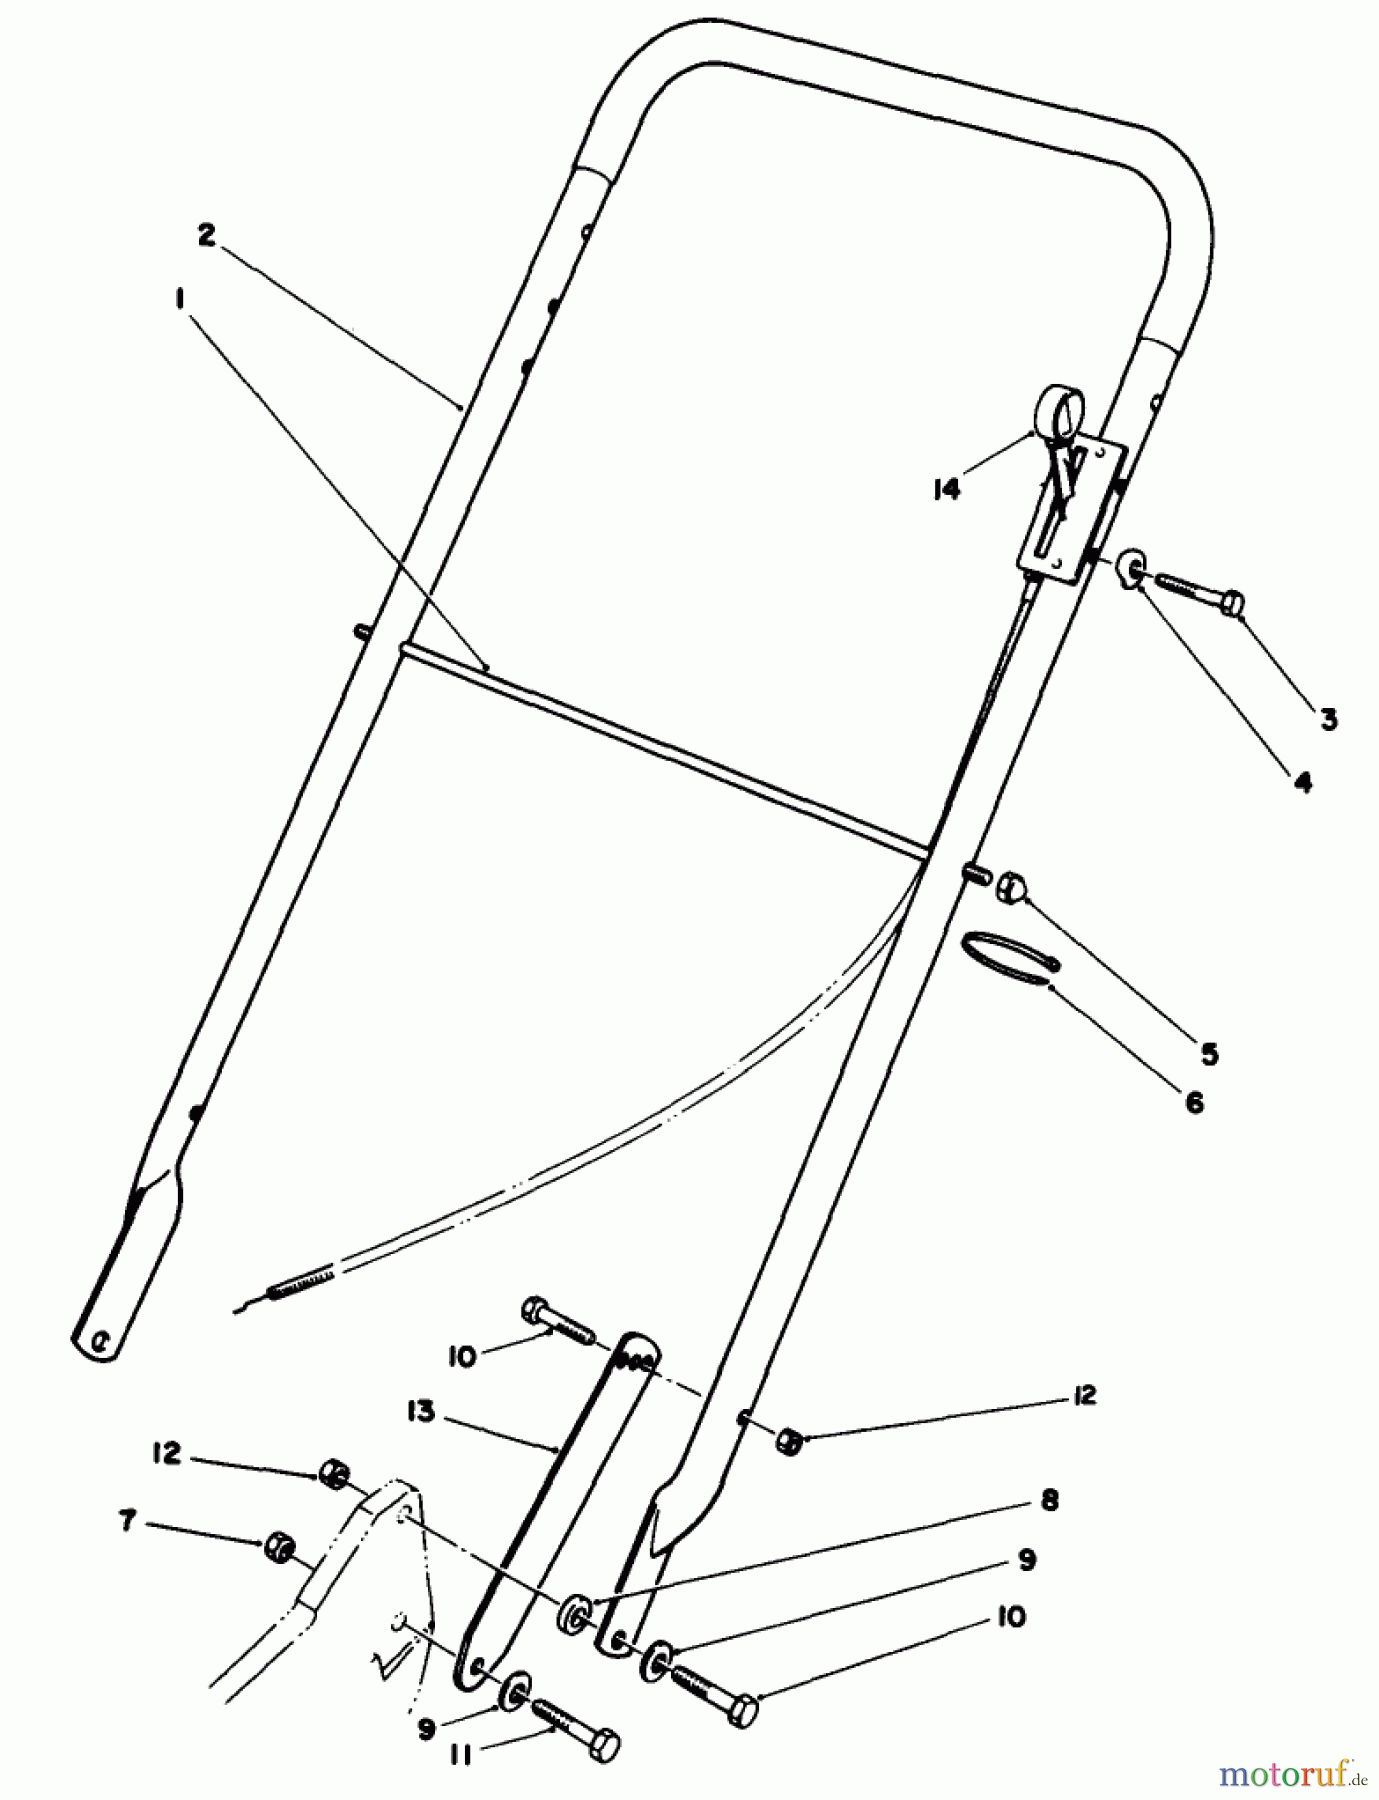  Toro Neu Mowers, Walk-Behind Seite 2 22035 - Toro Lawnmower, 1988 (8002990-8999999) HANDLE ASSEMBLY (MODEL 22030)